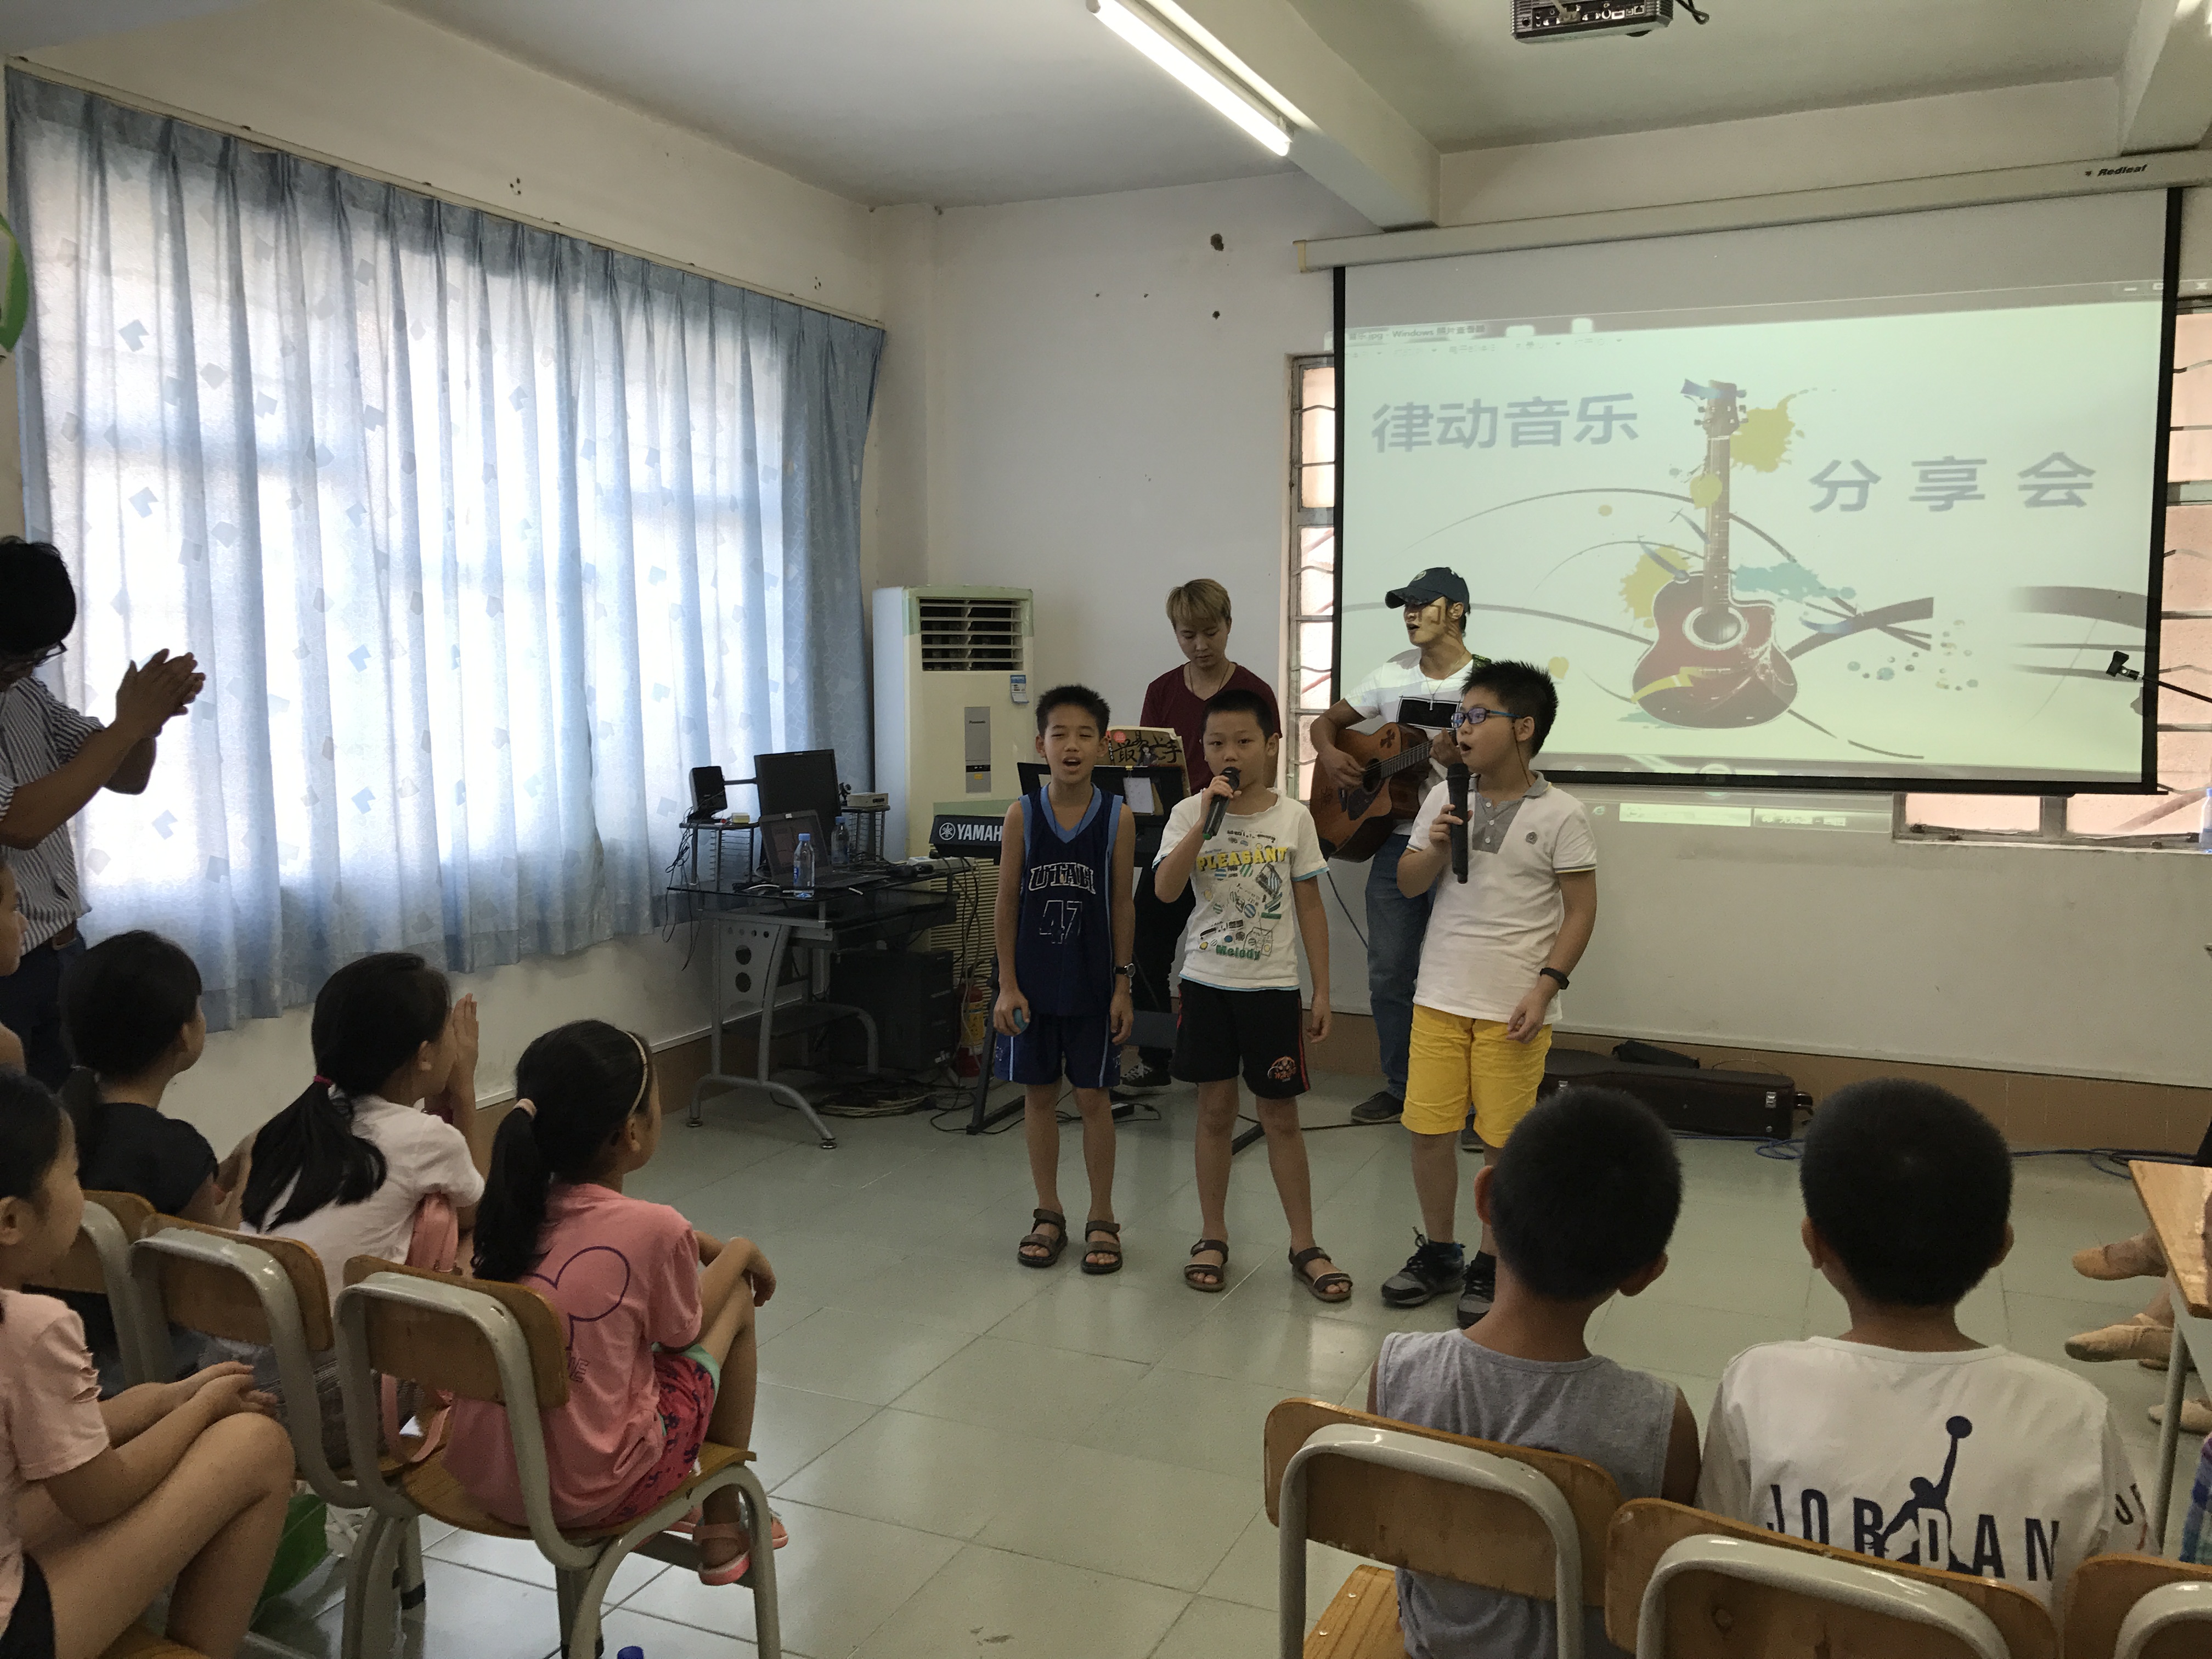 龙门县图书馆2017年暑期系列活动之“律动音乐分享会”